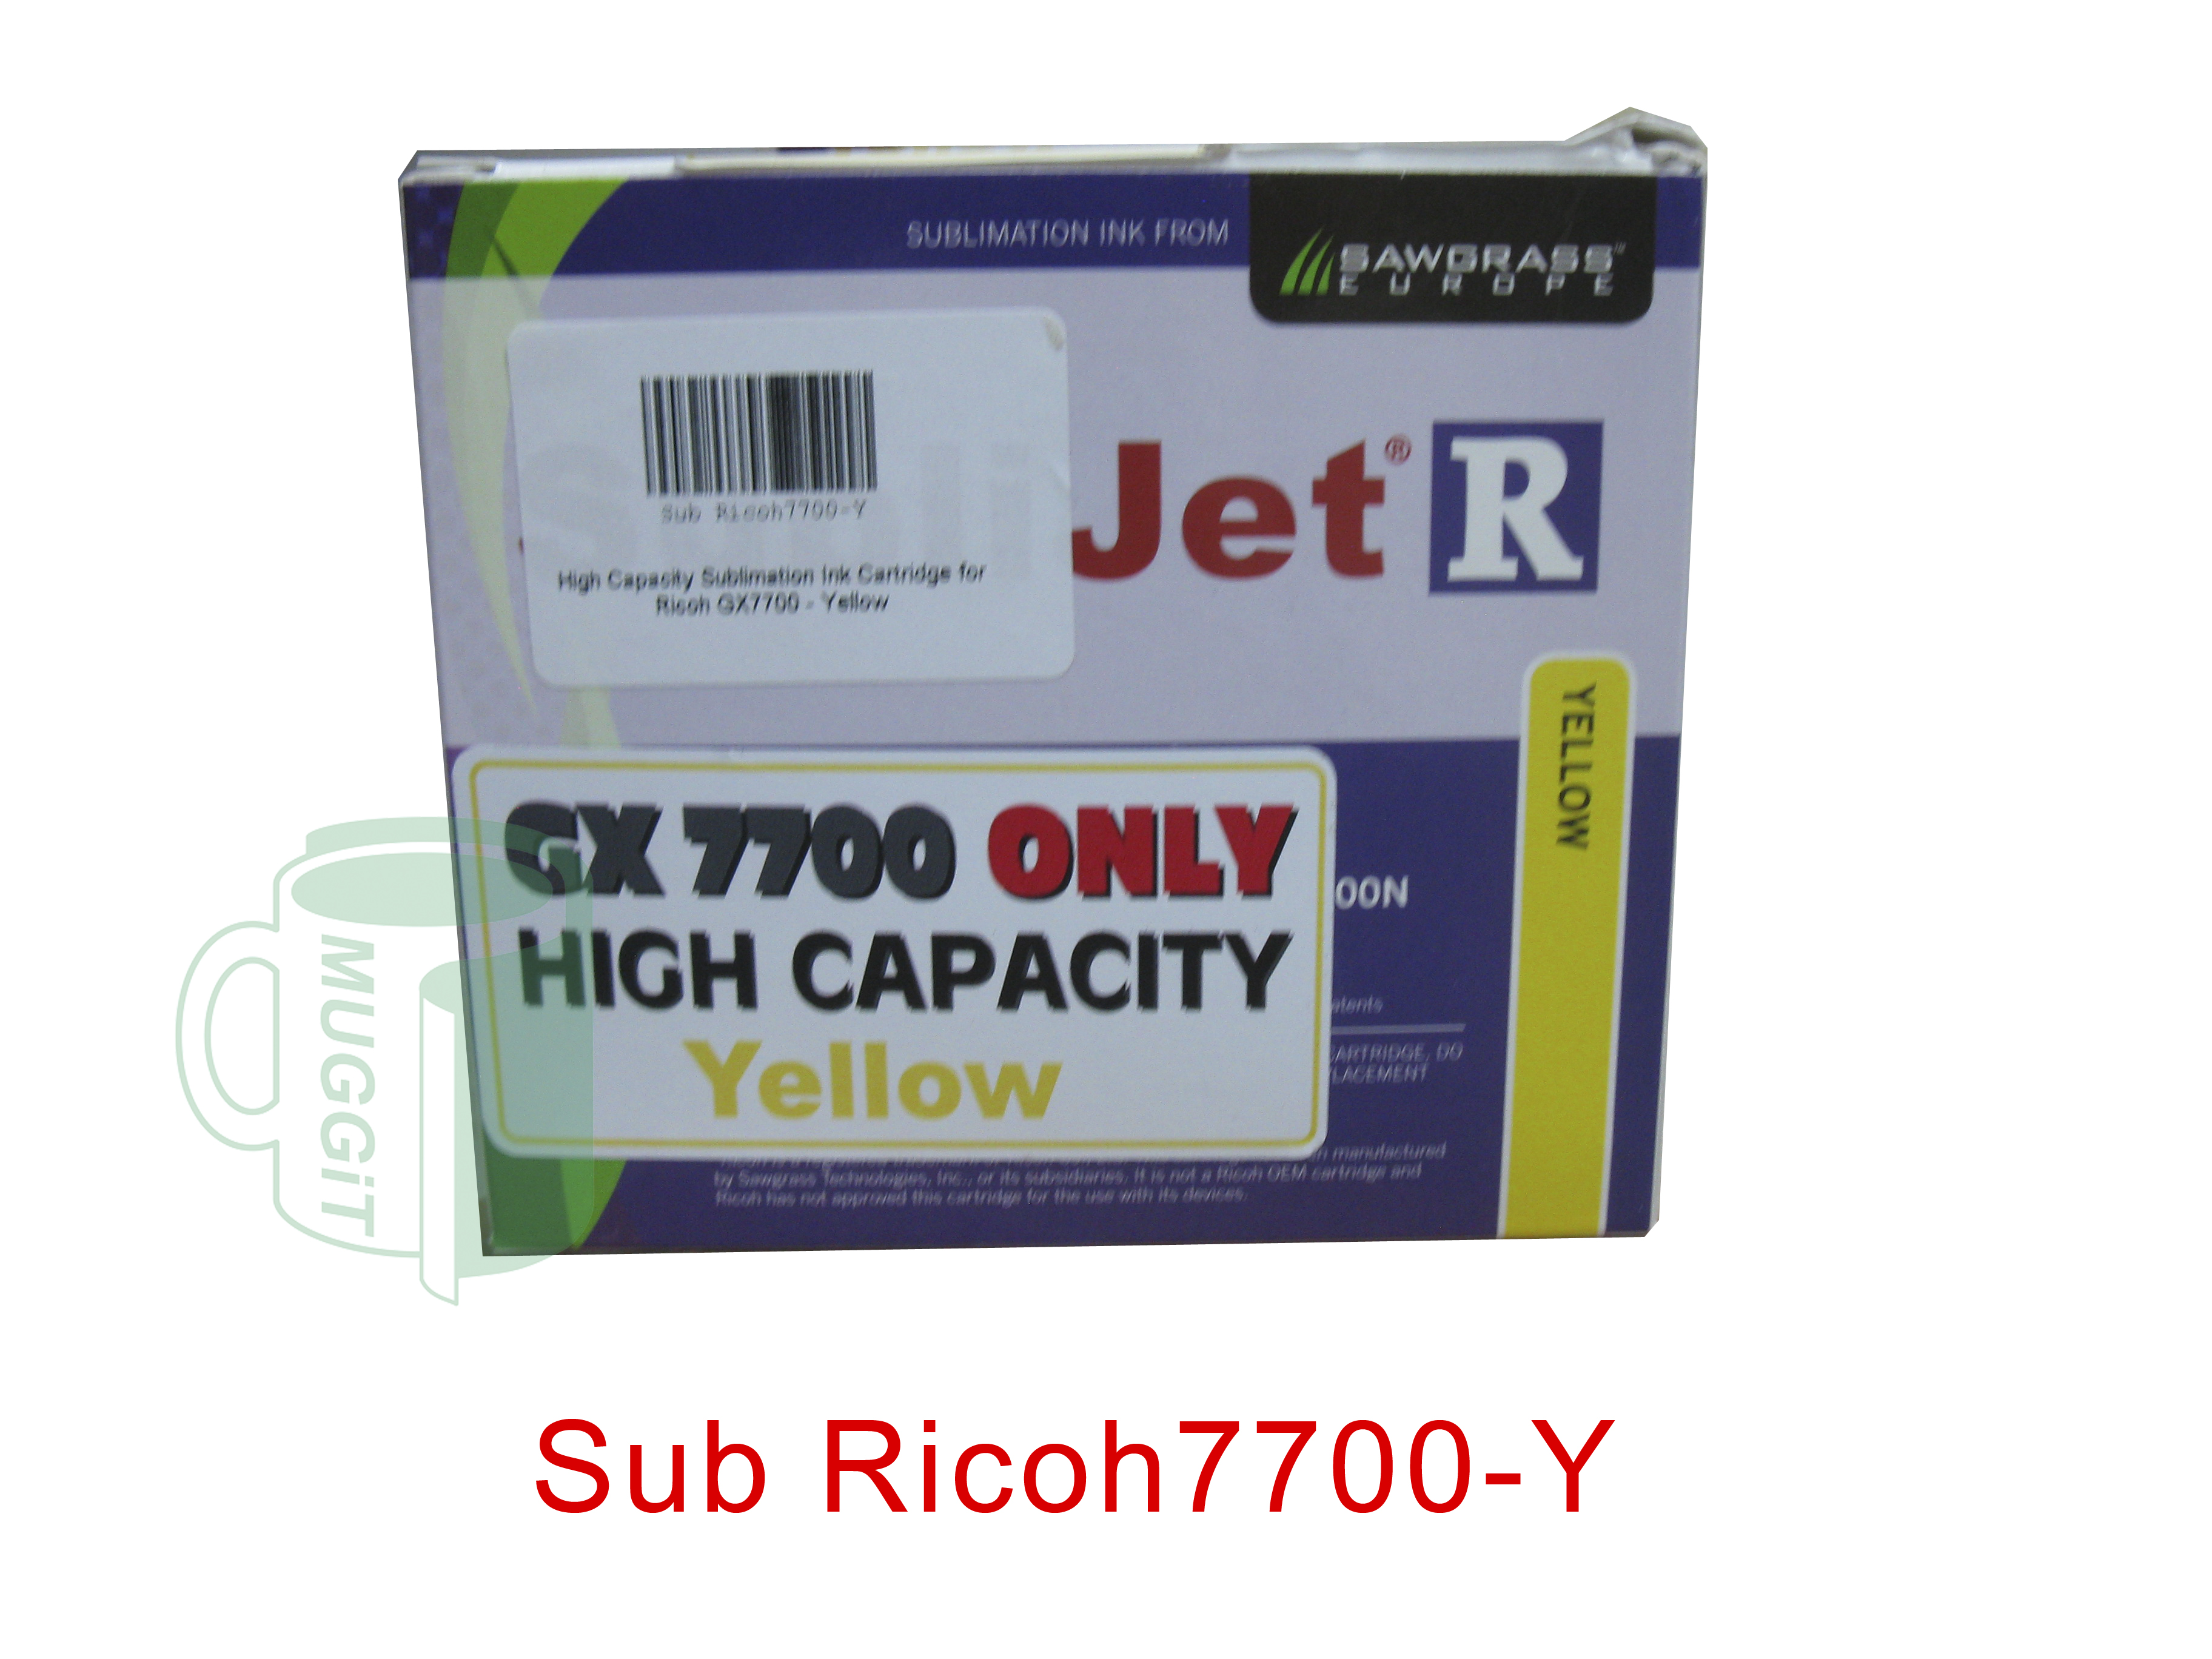 Sub Ricoh7700-Y